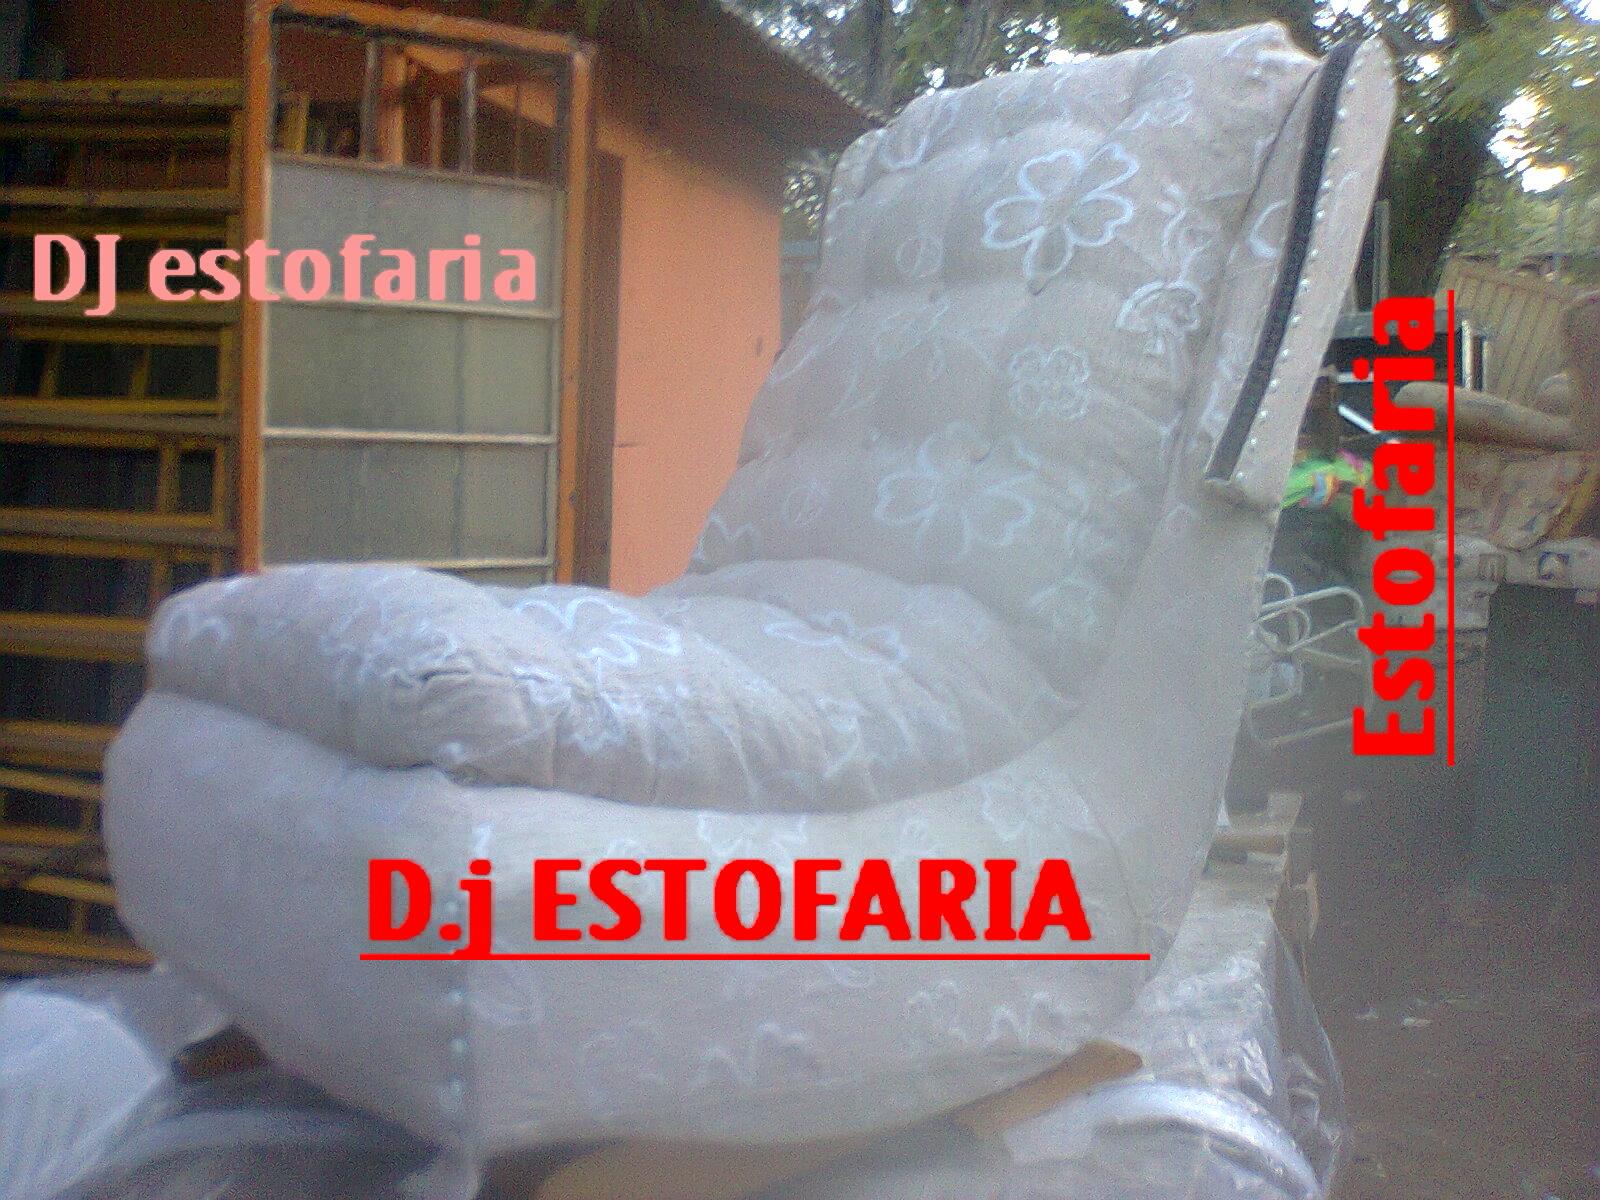 Estofaria DJ logo